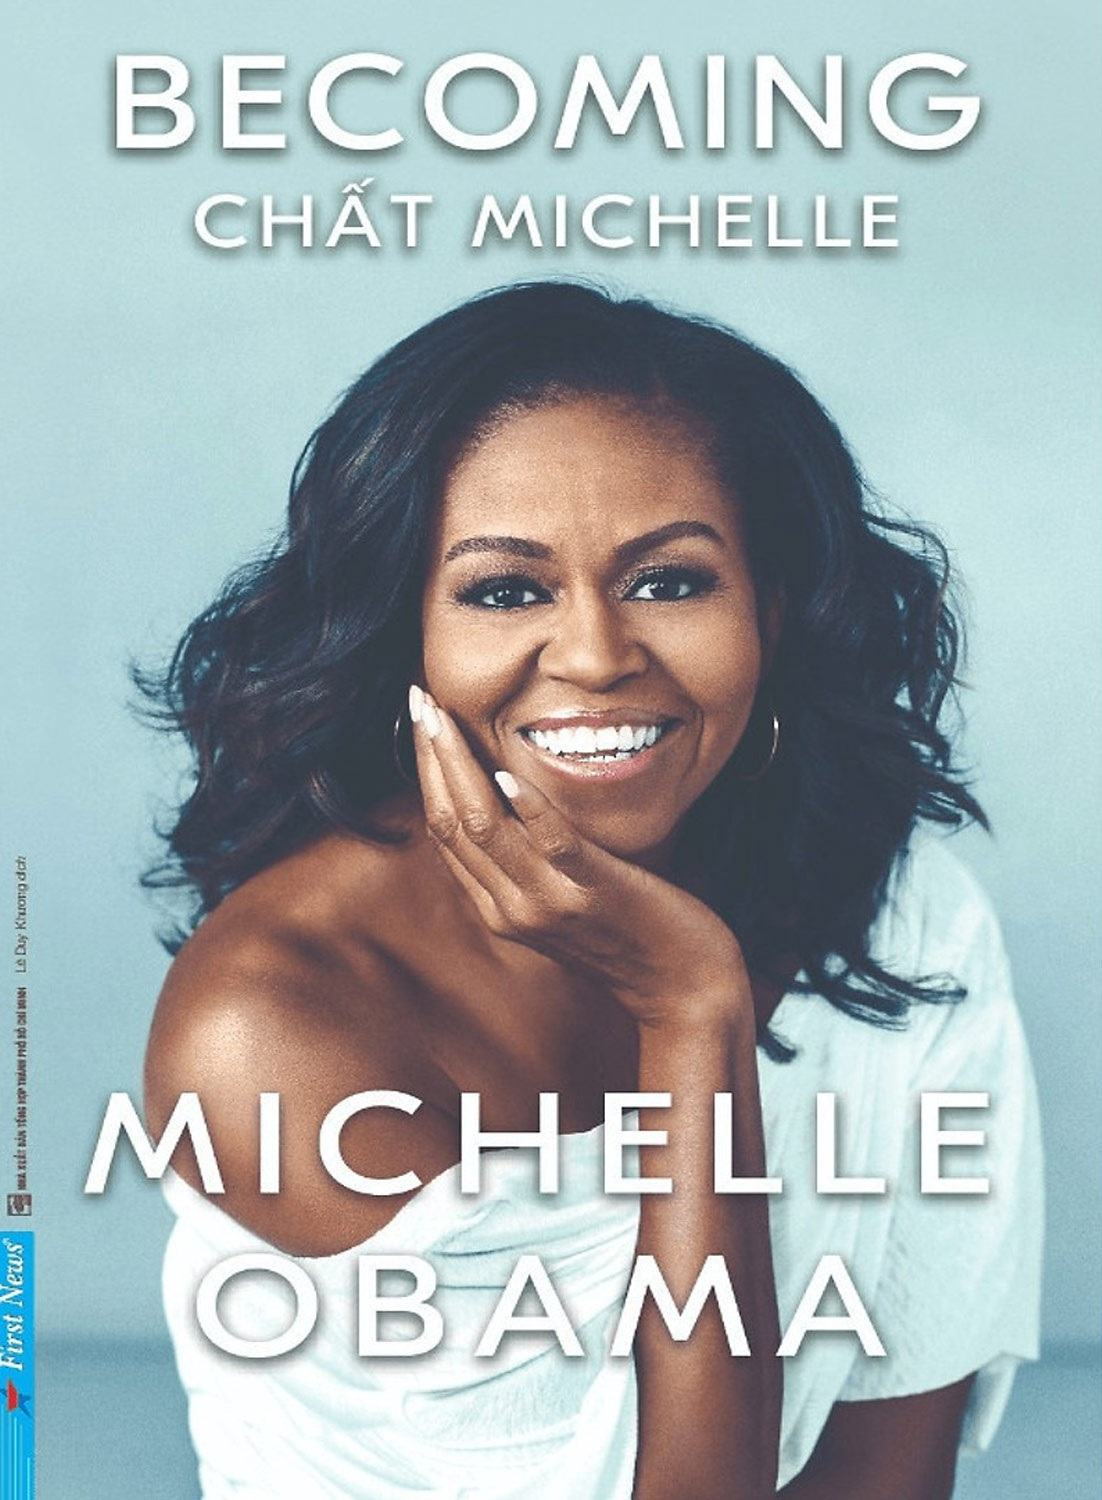 Netflix ra mắt phim về cuộc đời Michelle Obama và hồi ký “Chất Michelle” - 1